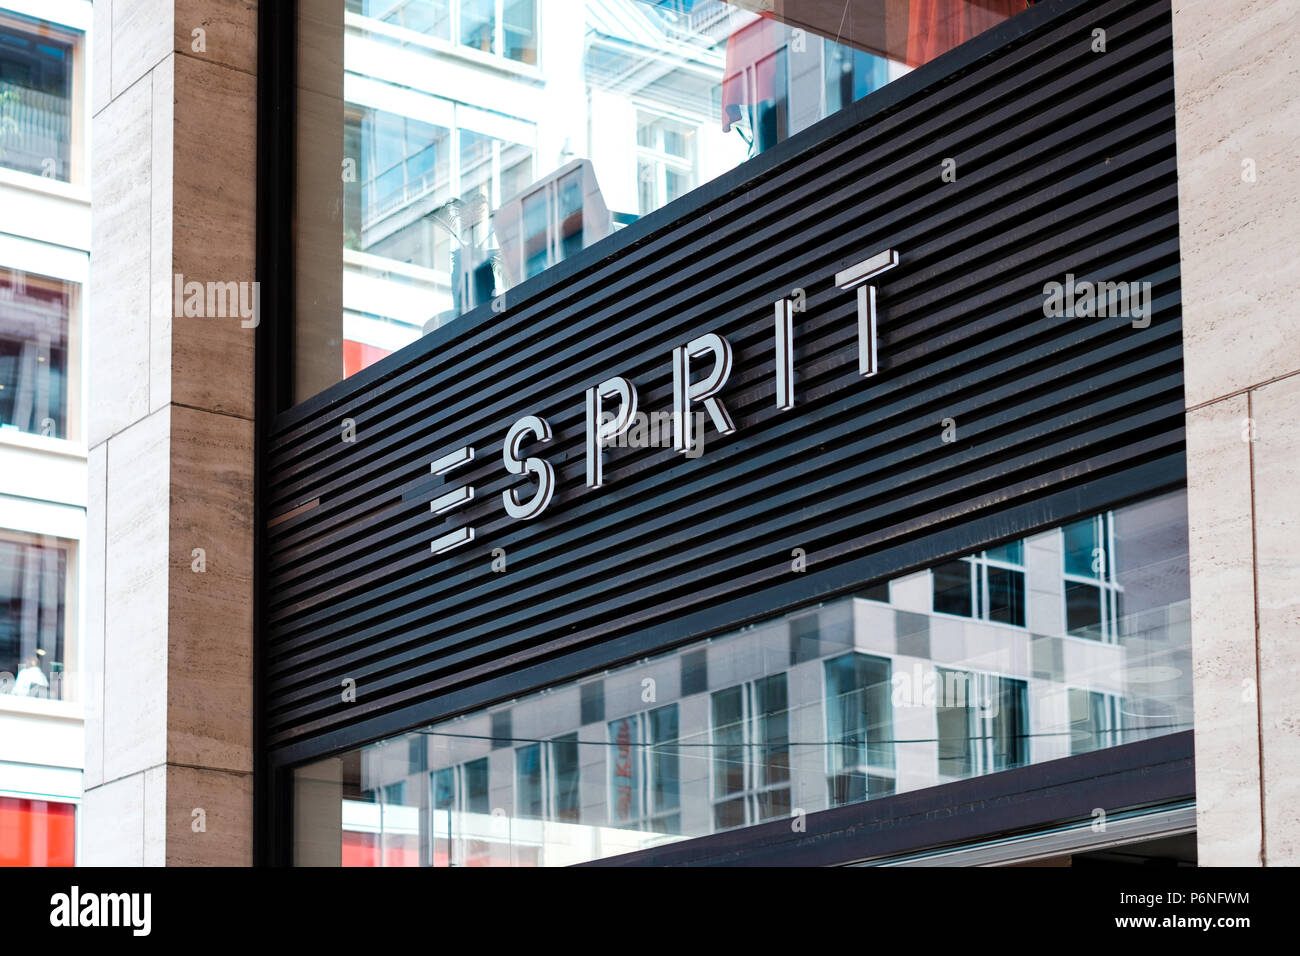 Berlin, Allemagne - juin 2018 : l'Esprit logo sur store extérieur / shop façade dans Berlin, Allemagne Banque D'Images